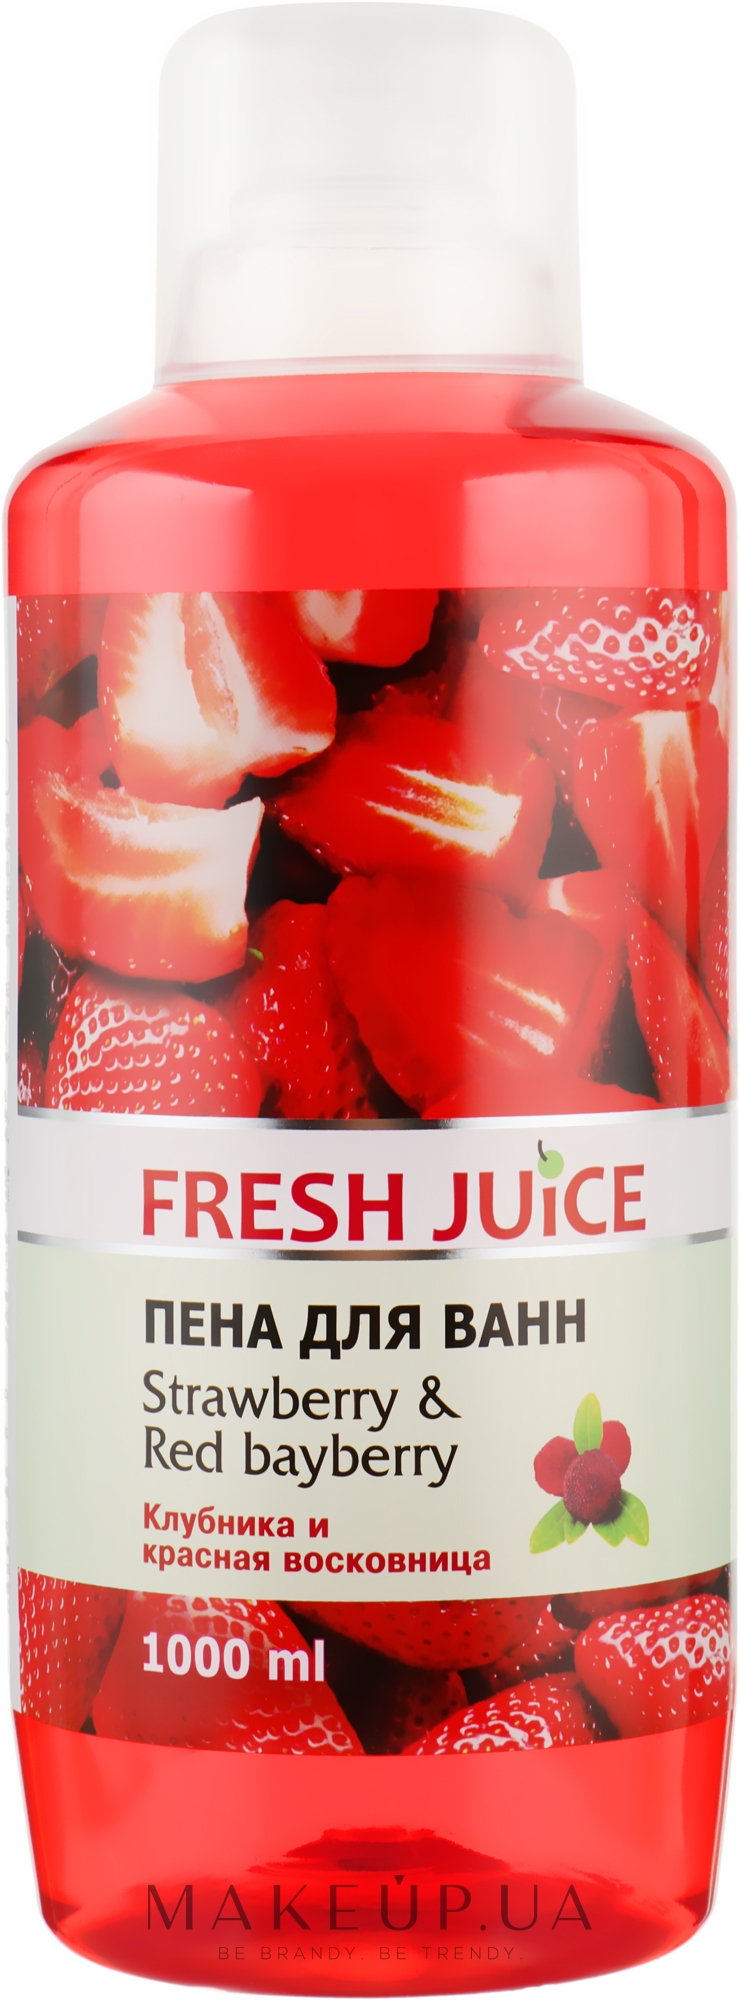 Пена для ванны "Клубника и красная восковница" - Fresh Juice Strawberry and Red Bayberry — фото 1000ml